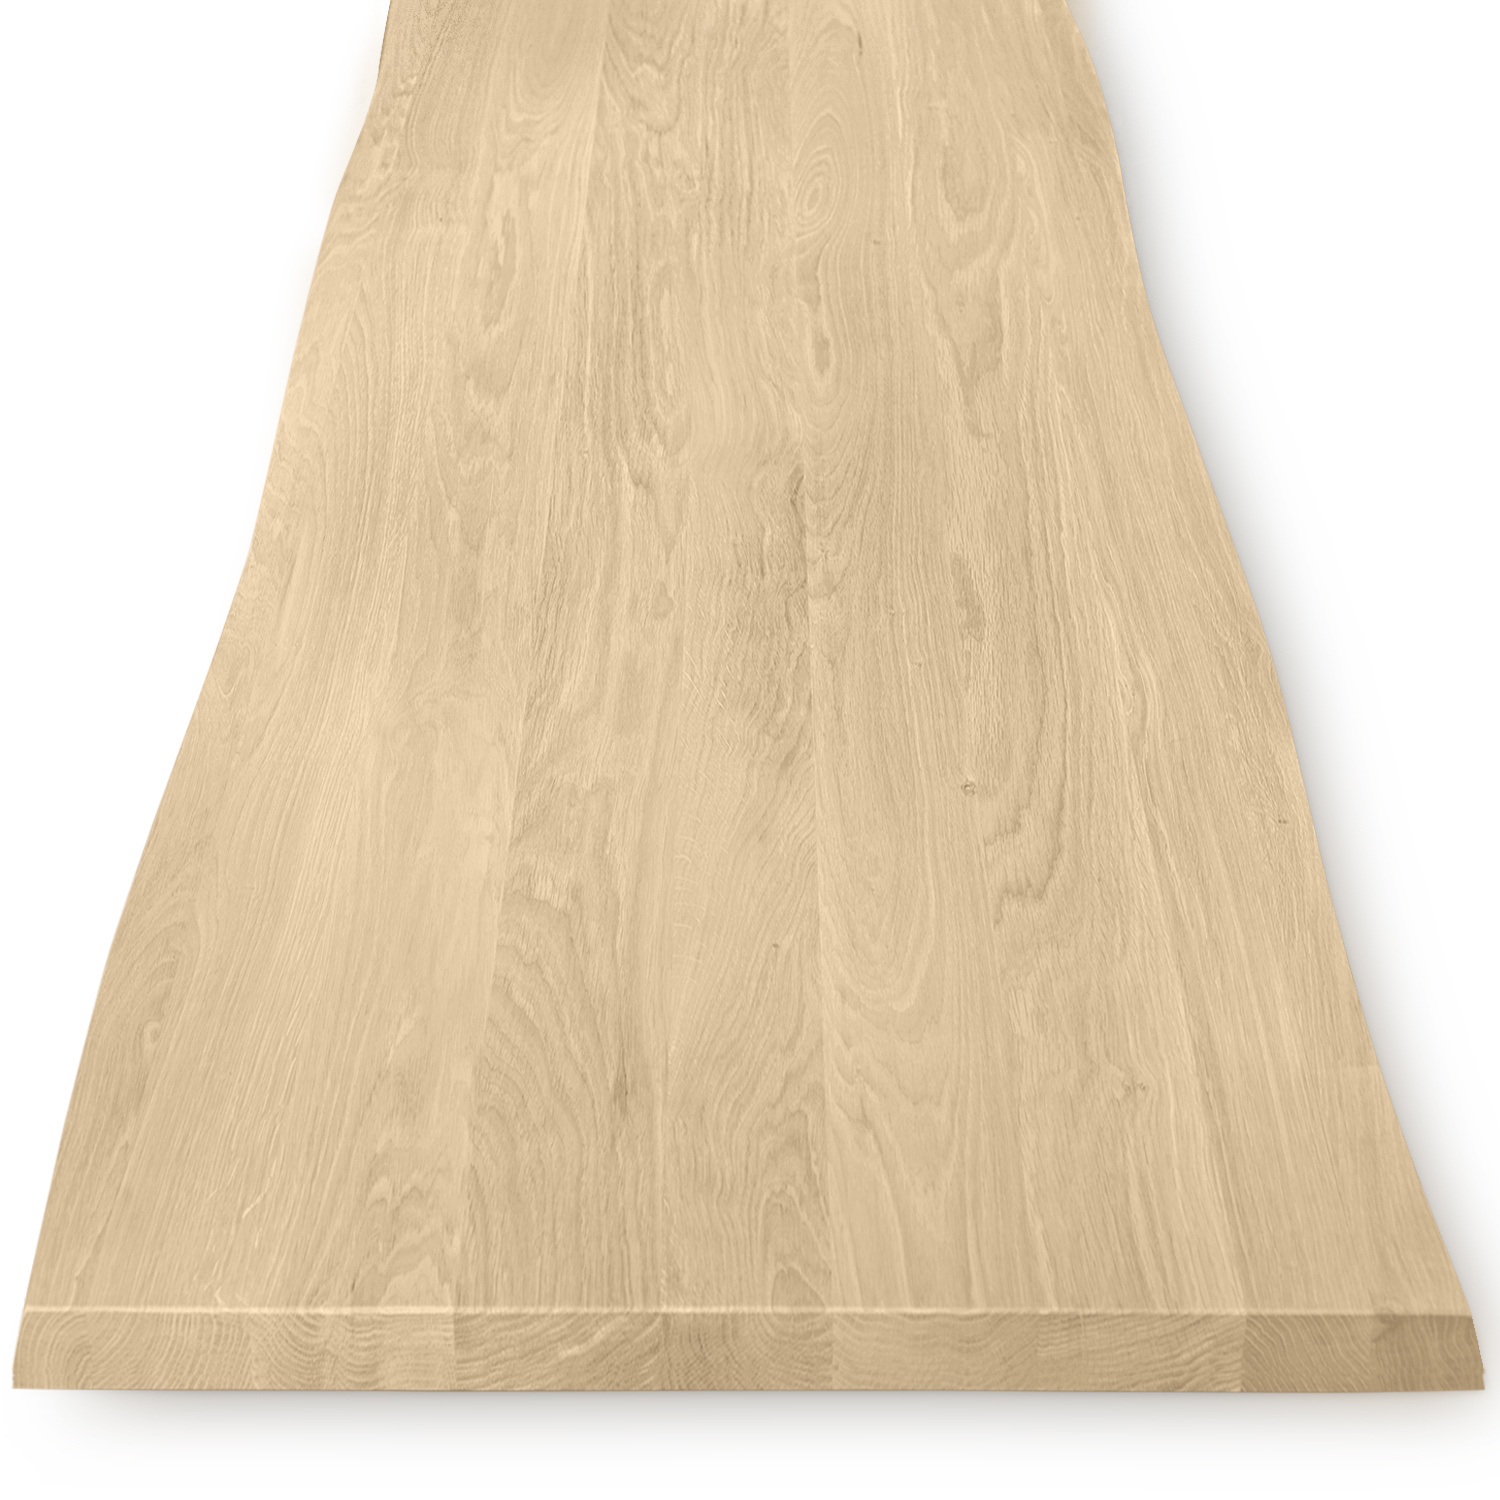  Tischplatte Eiche - mit Baumkante (Optik)  - 4 cm dick (1-Schicht) - Breite Lamellen (10 - 12 cm breit) - Eichenholz A-Qualität - verleimt & künstlich getrocknet (HF 8-12%) - verschiedene Größen